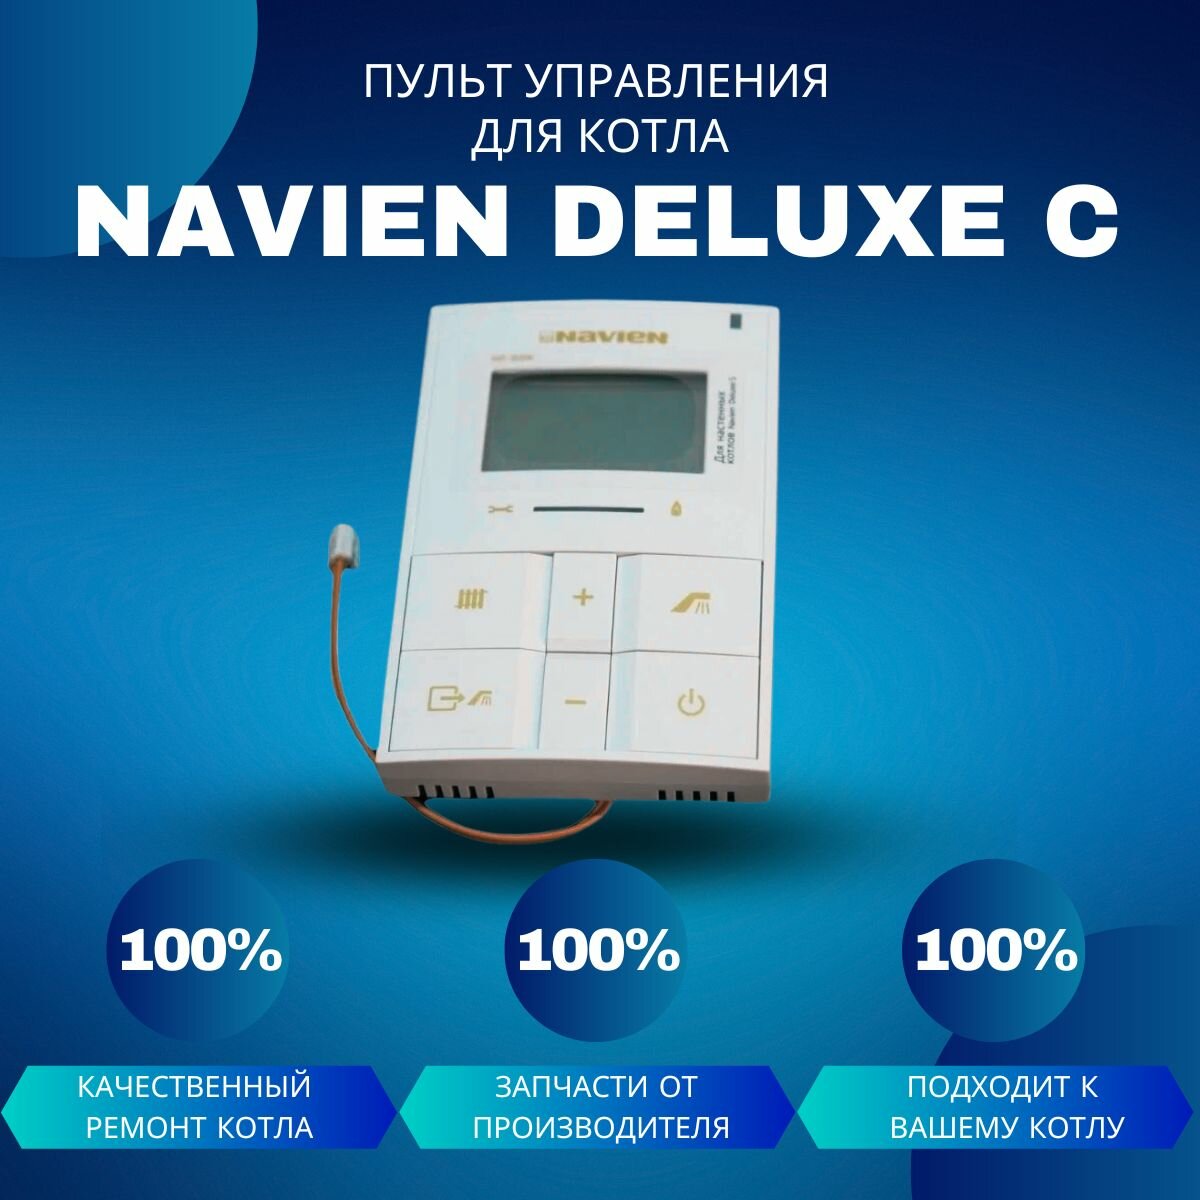     Navien Deluxe C